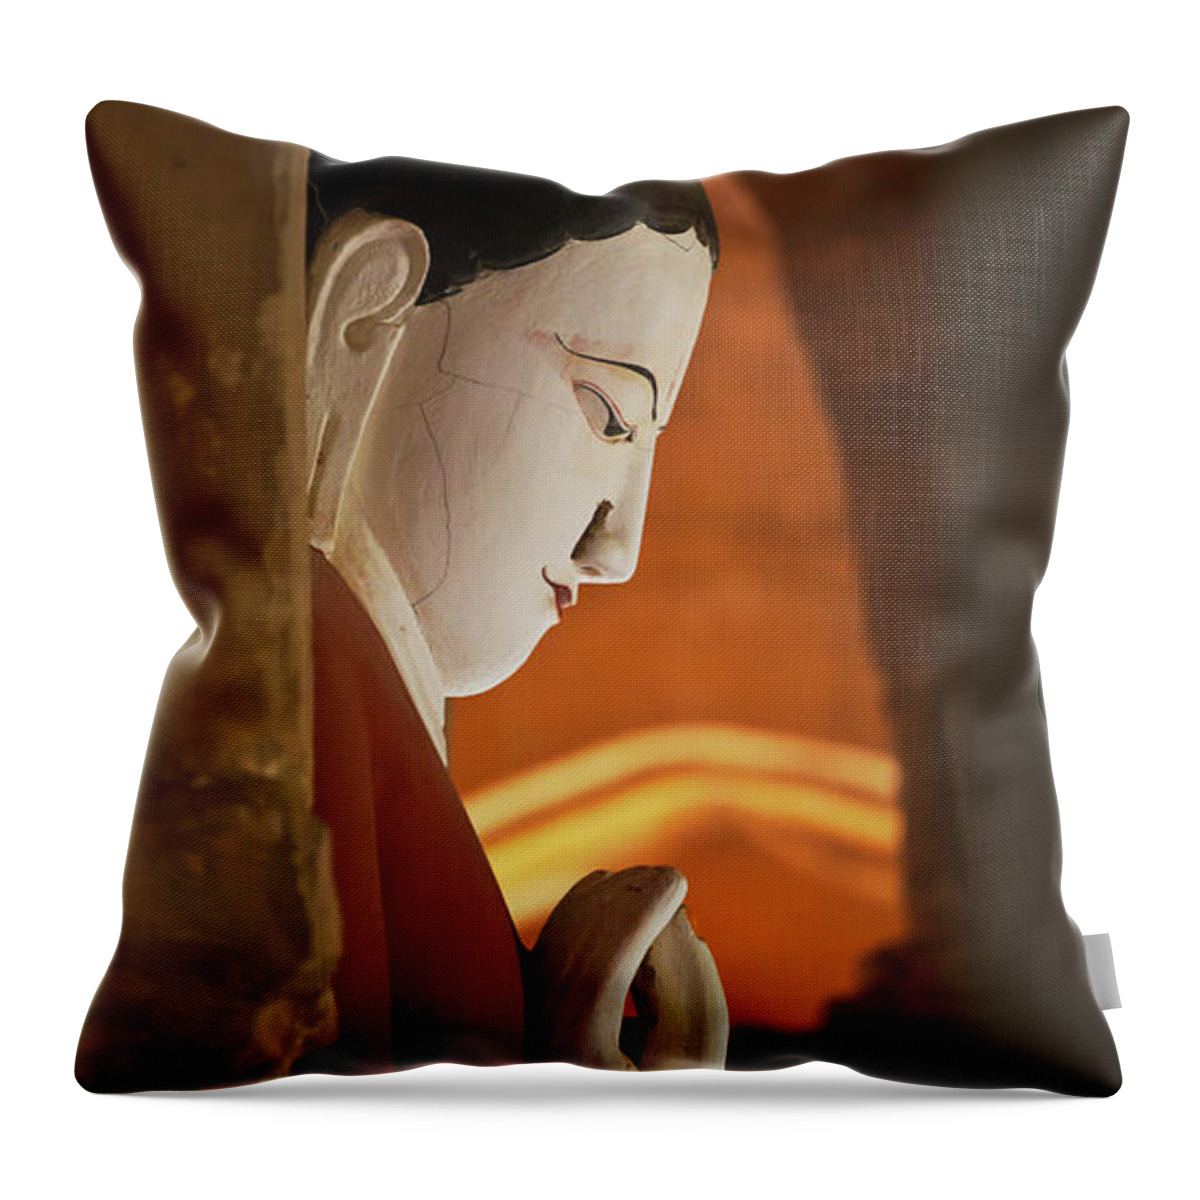 Sculptures Throw Pillow featuring the photograph Burma_d2287 by Craig Lovell